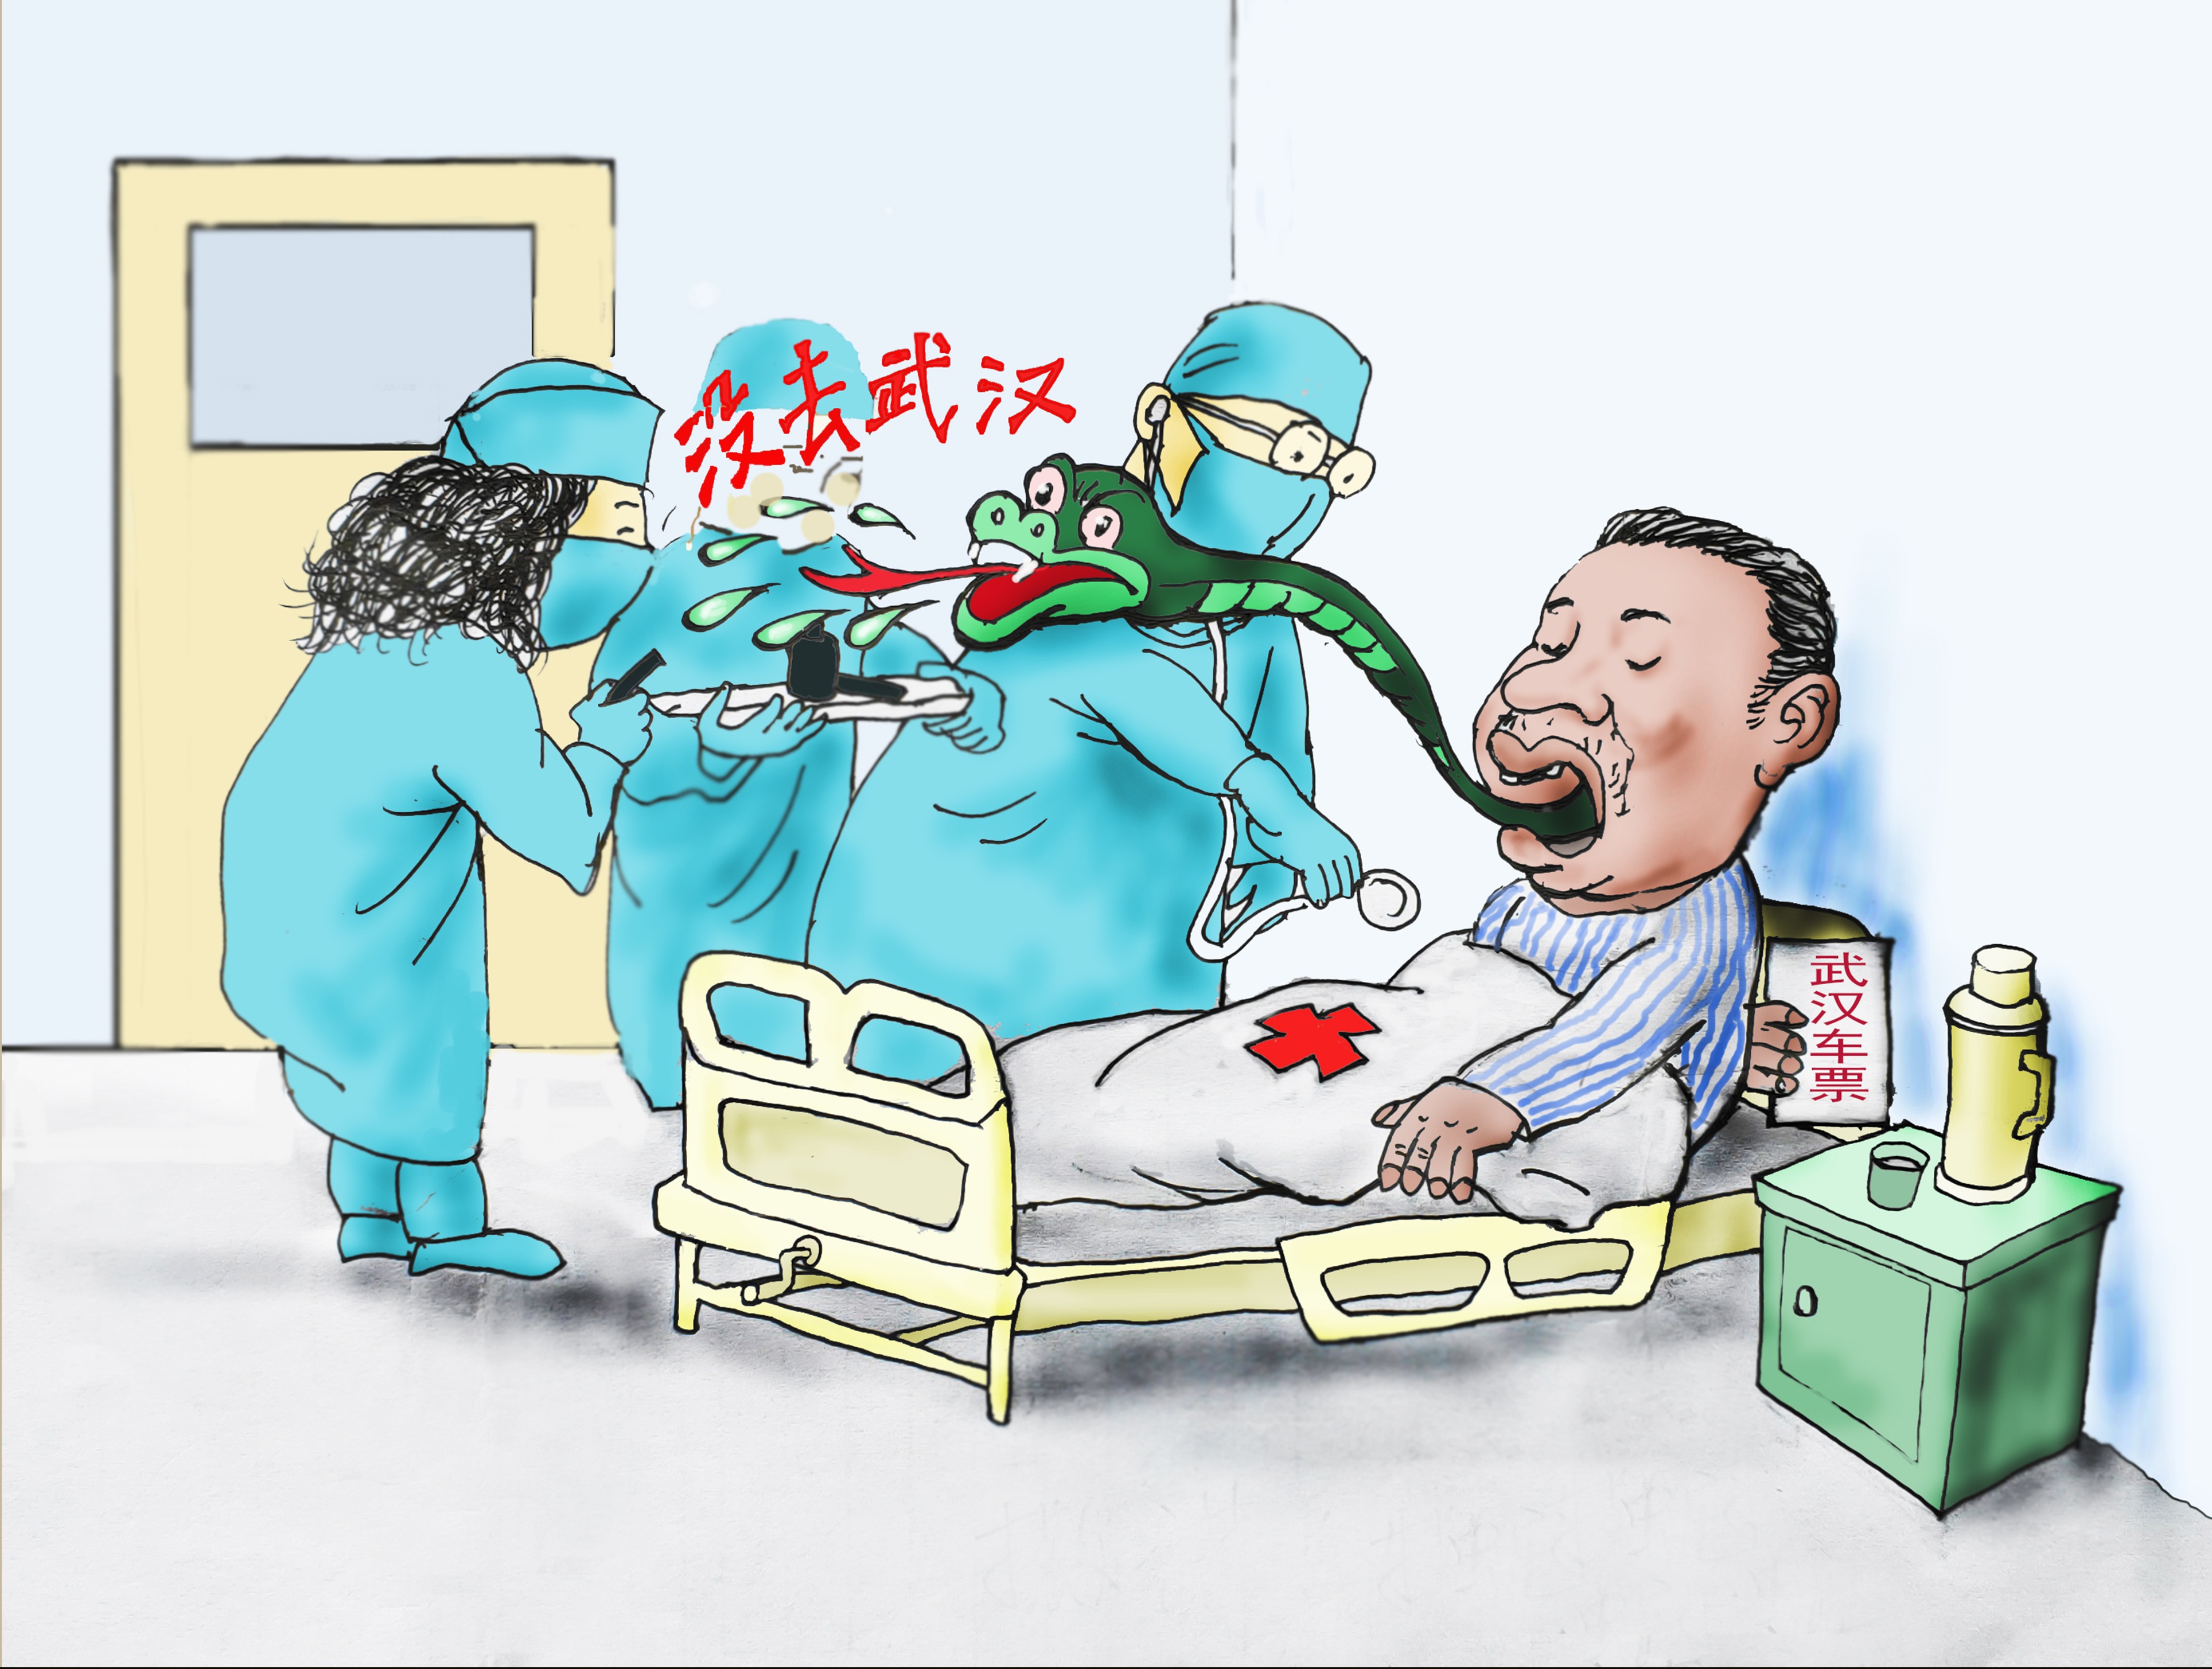 这就是山东丨山东省漫画家协会创作系列漫画作品为抗击疫情加油第五期